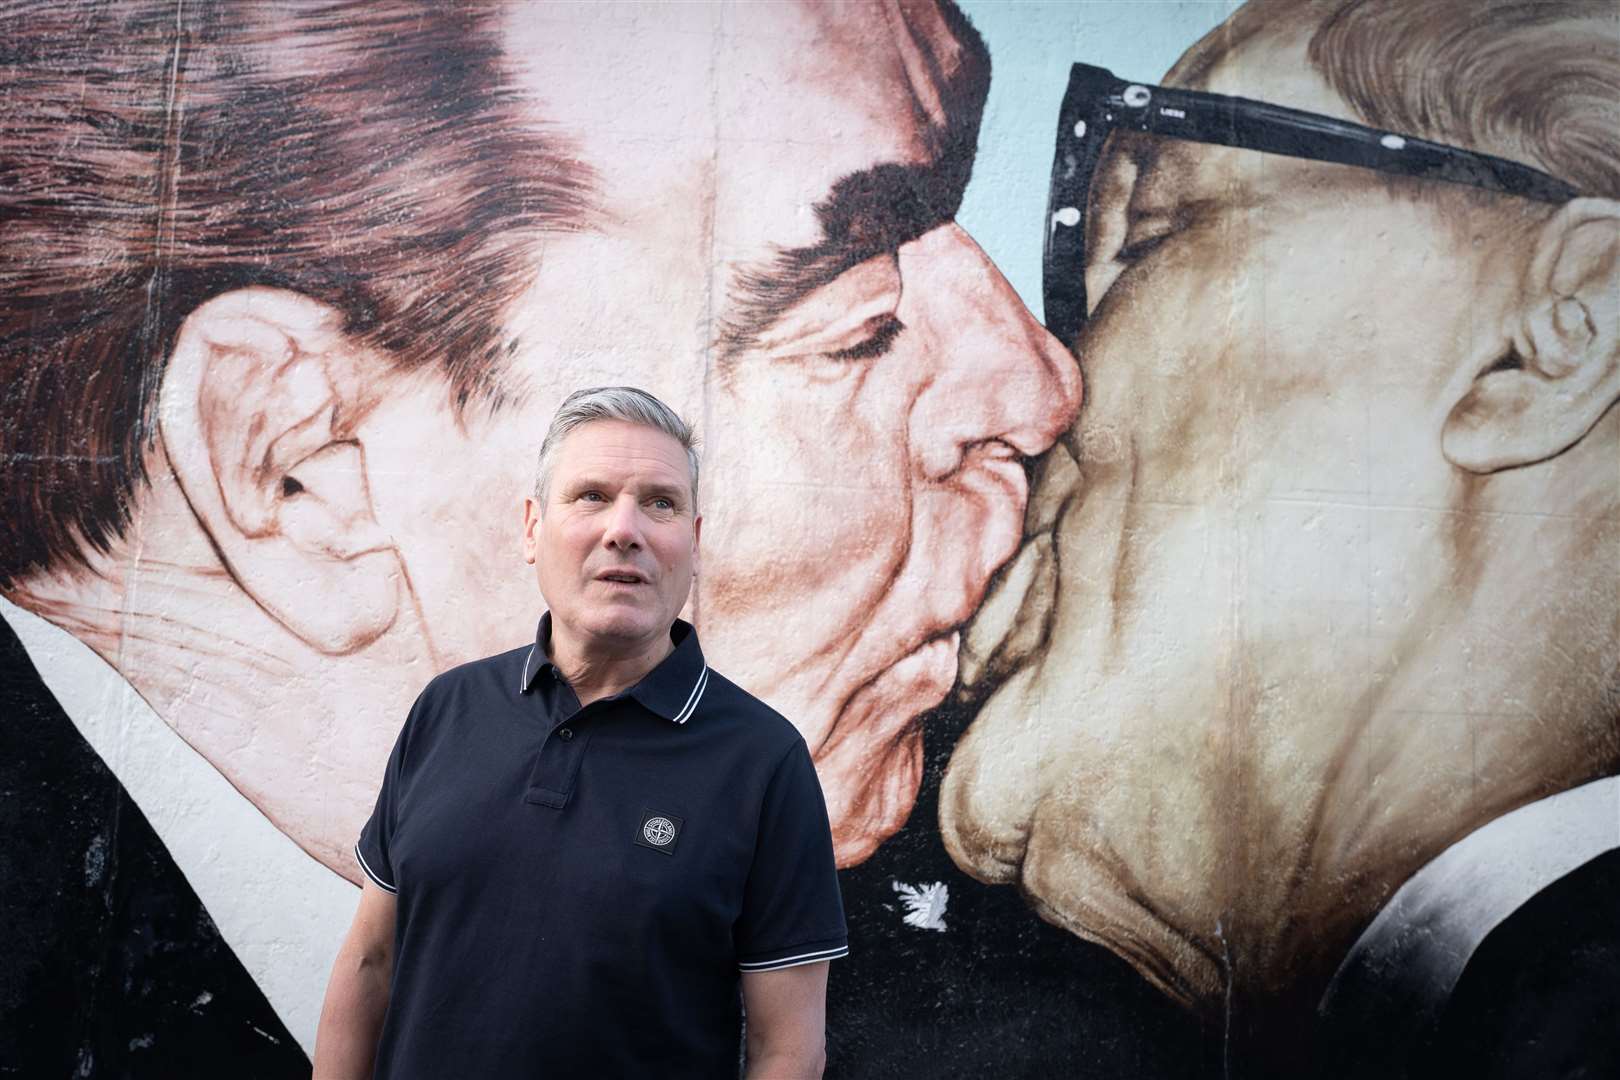 Sir Keir Starmer besucht die Berliner Mauer auf einer Reise nach Deutschland